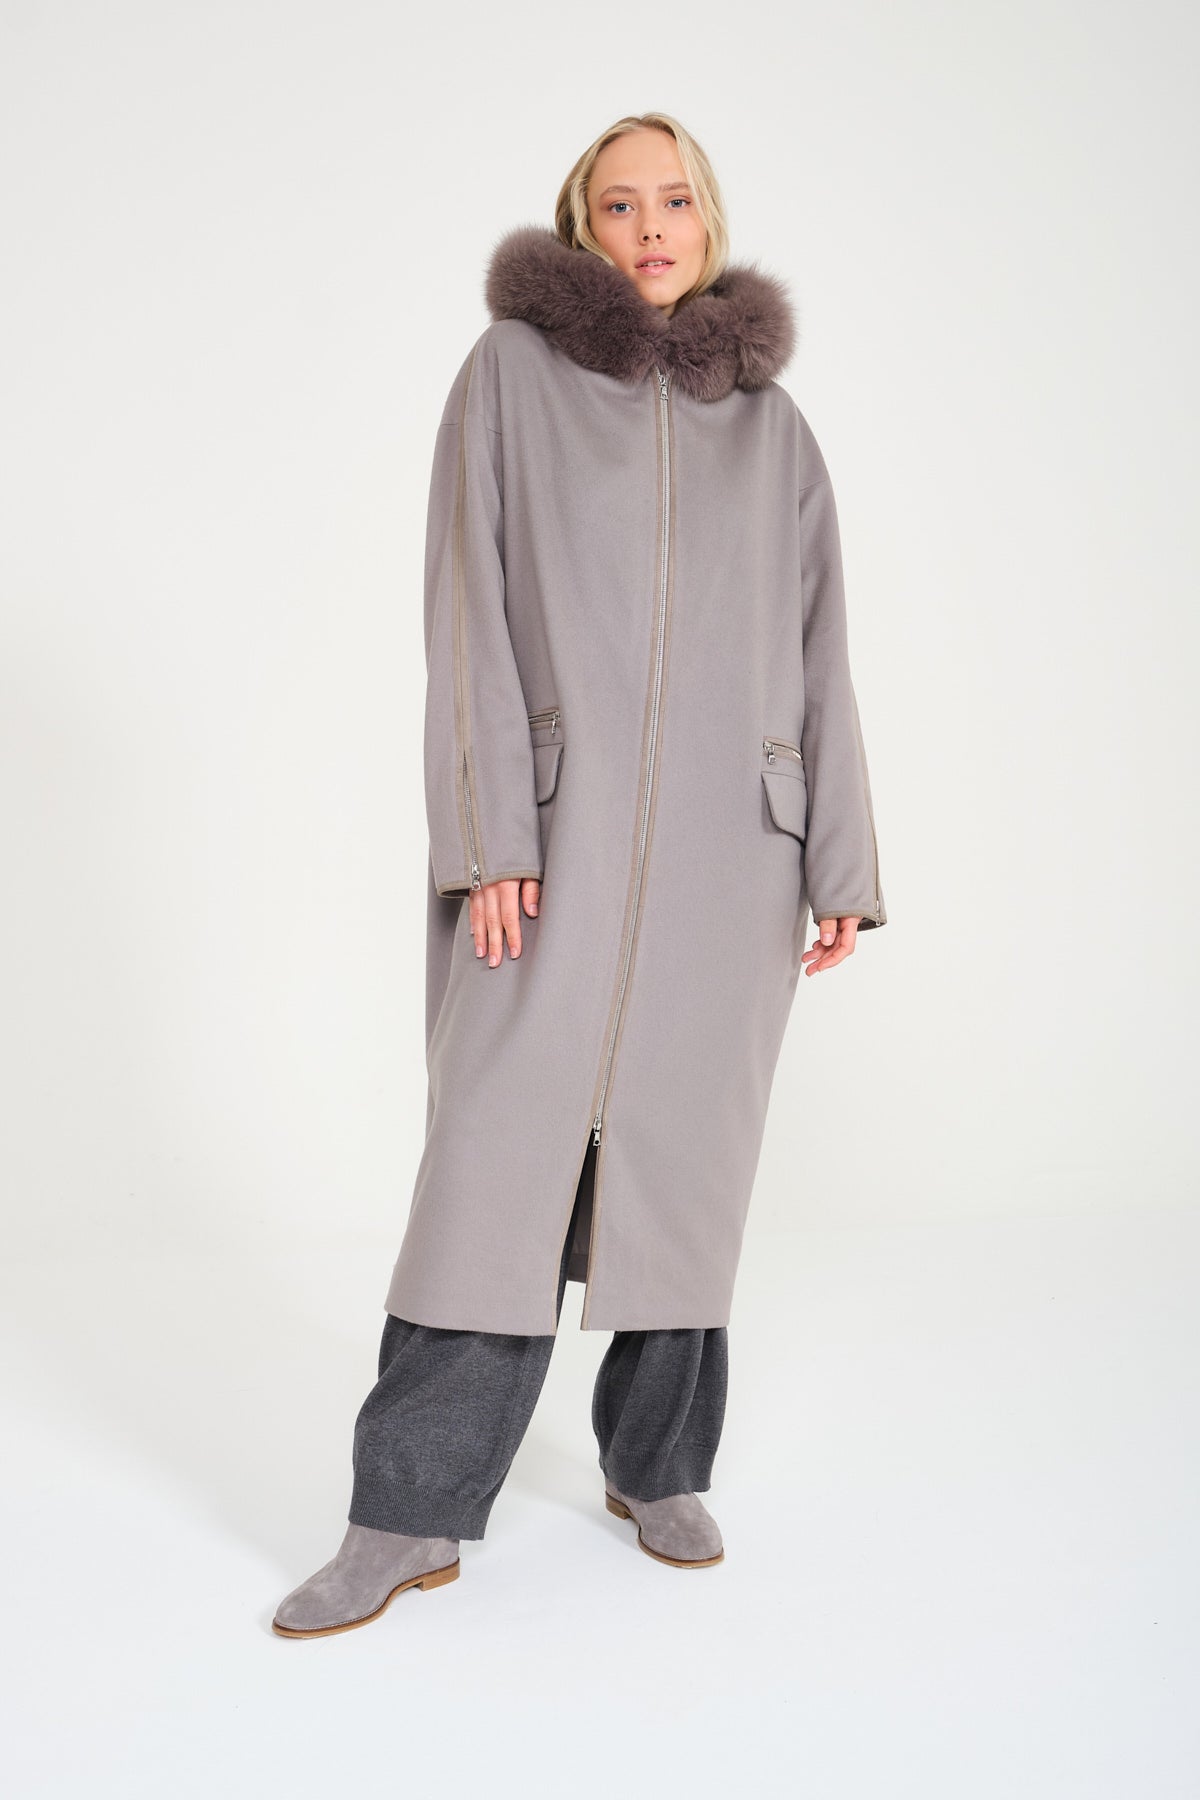 Grey Long Fox Fur Coat